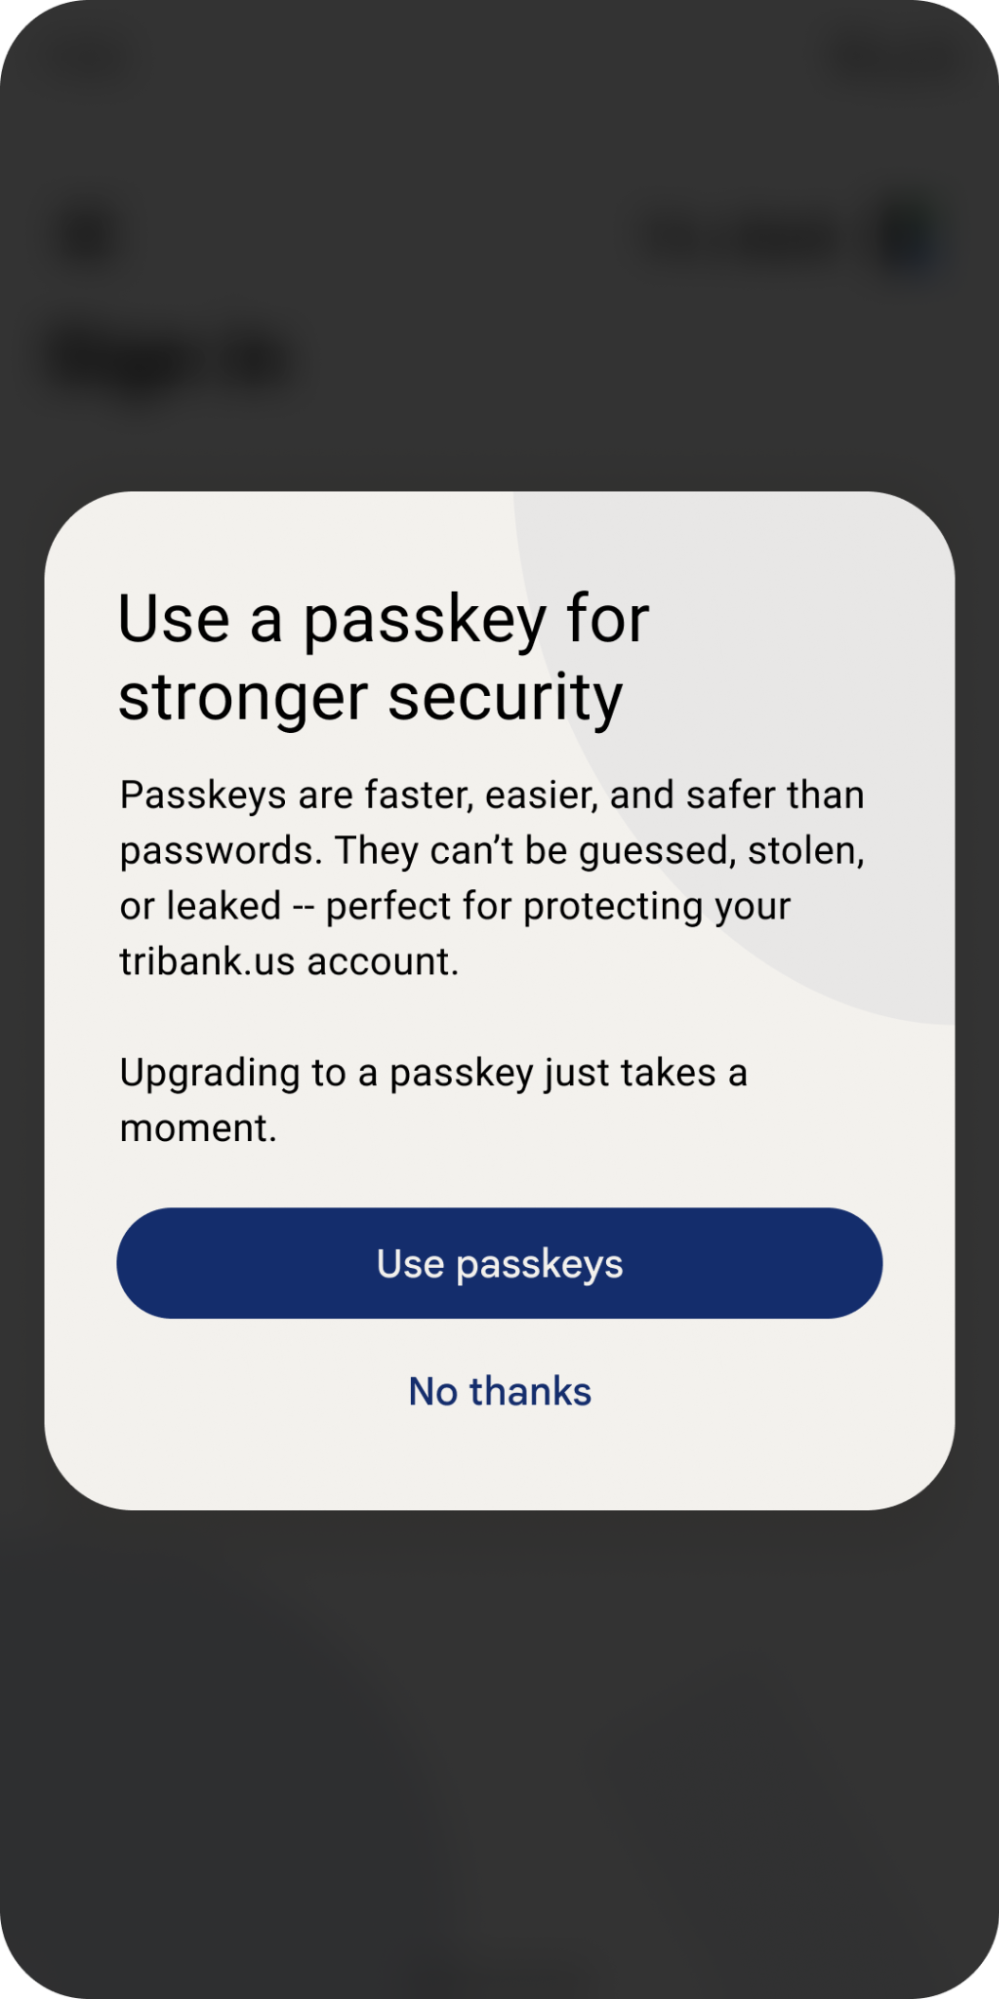 사용자에게 패스키를 사용하여 더 빠르고 안전한 비밀번호를 사용하라고 제안하는 팝업